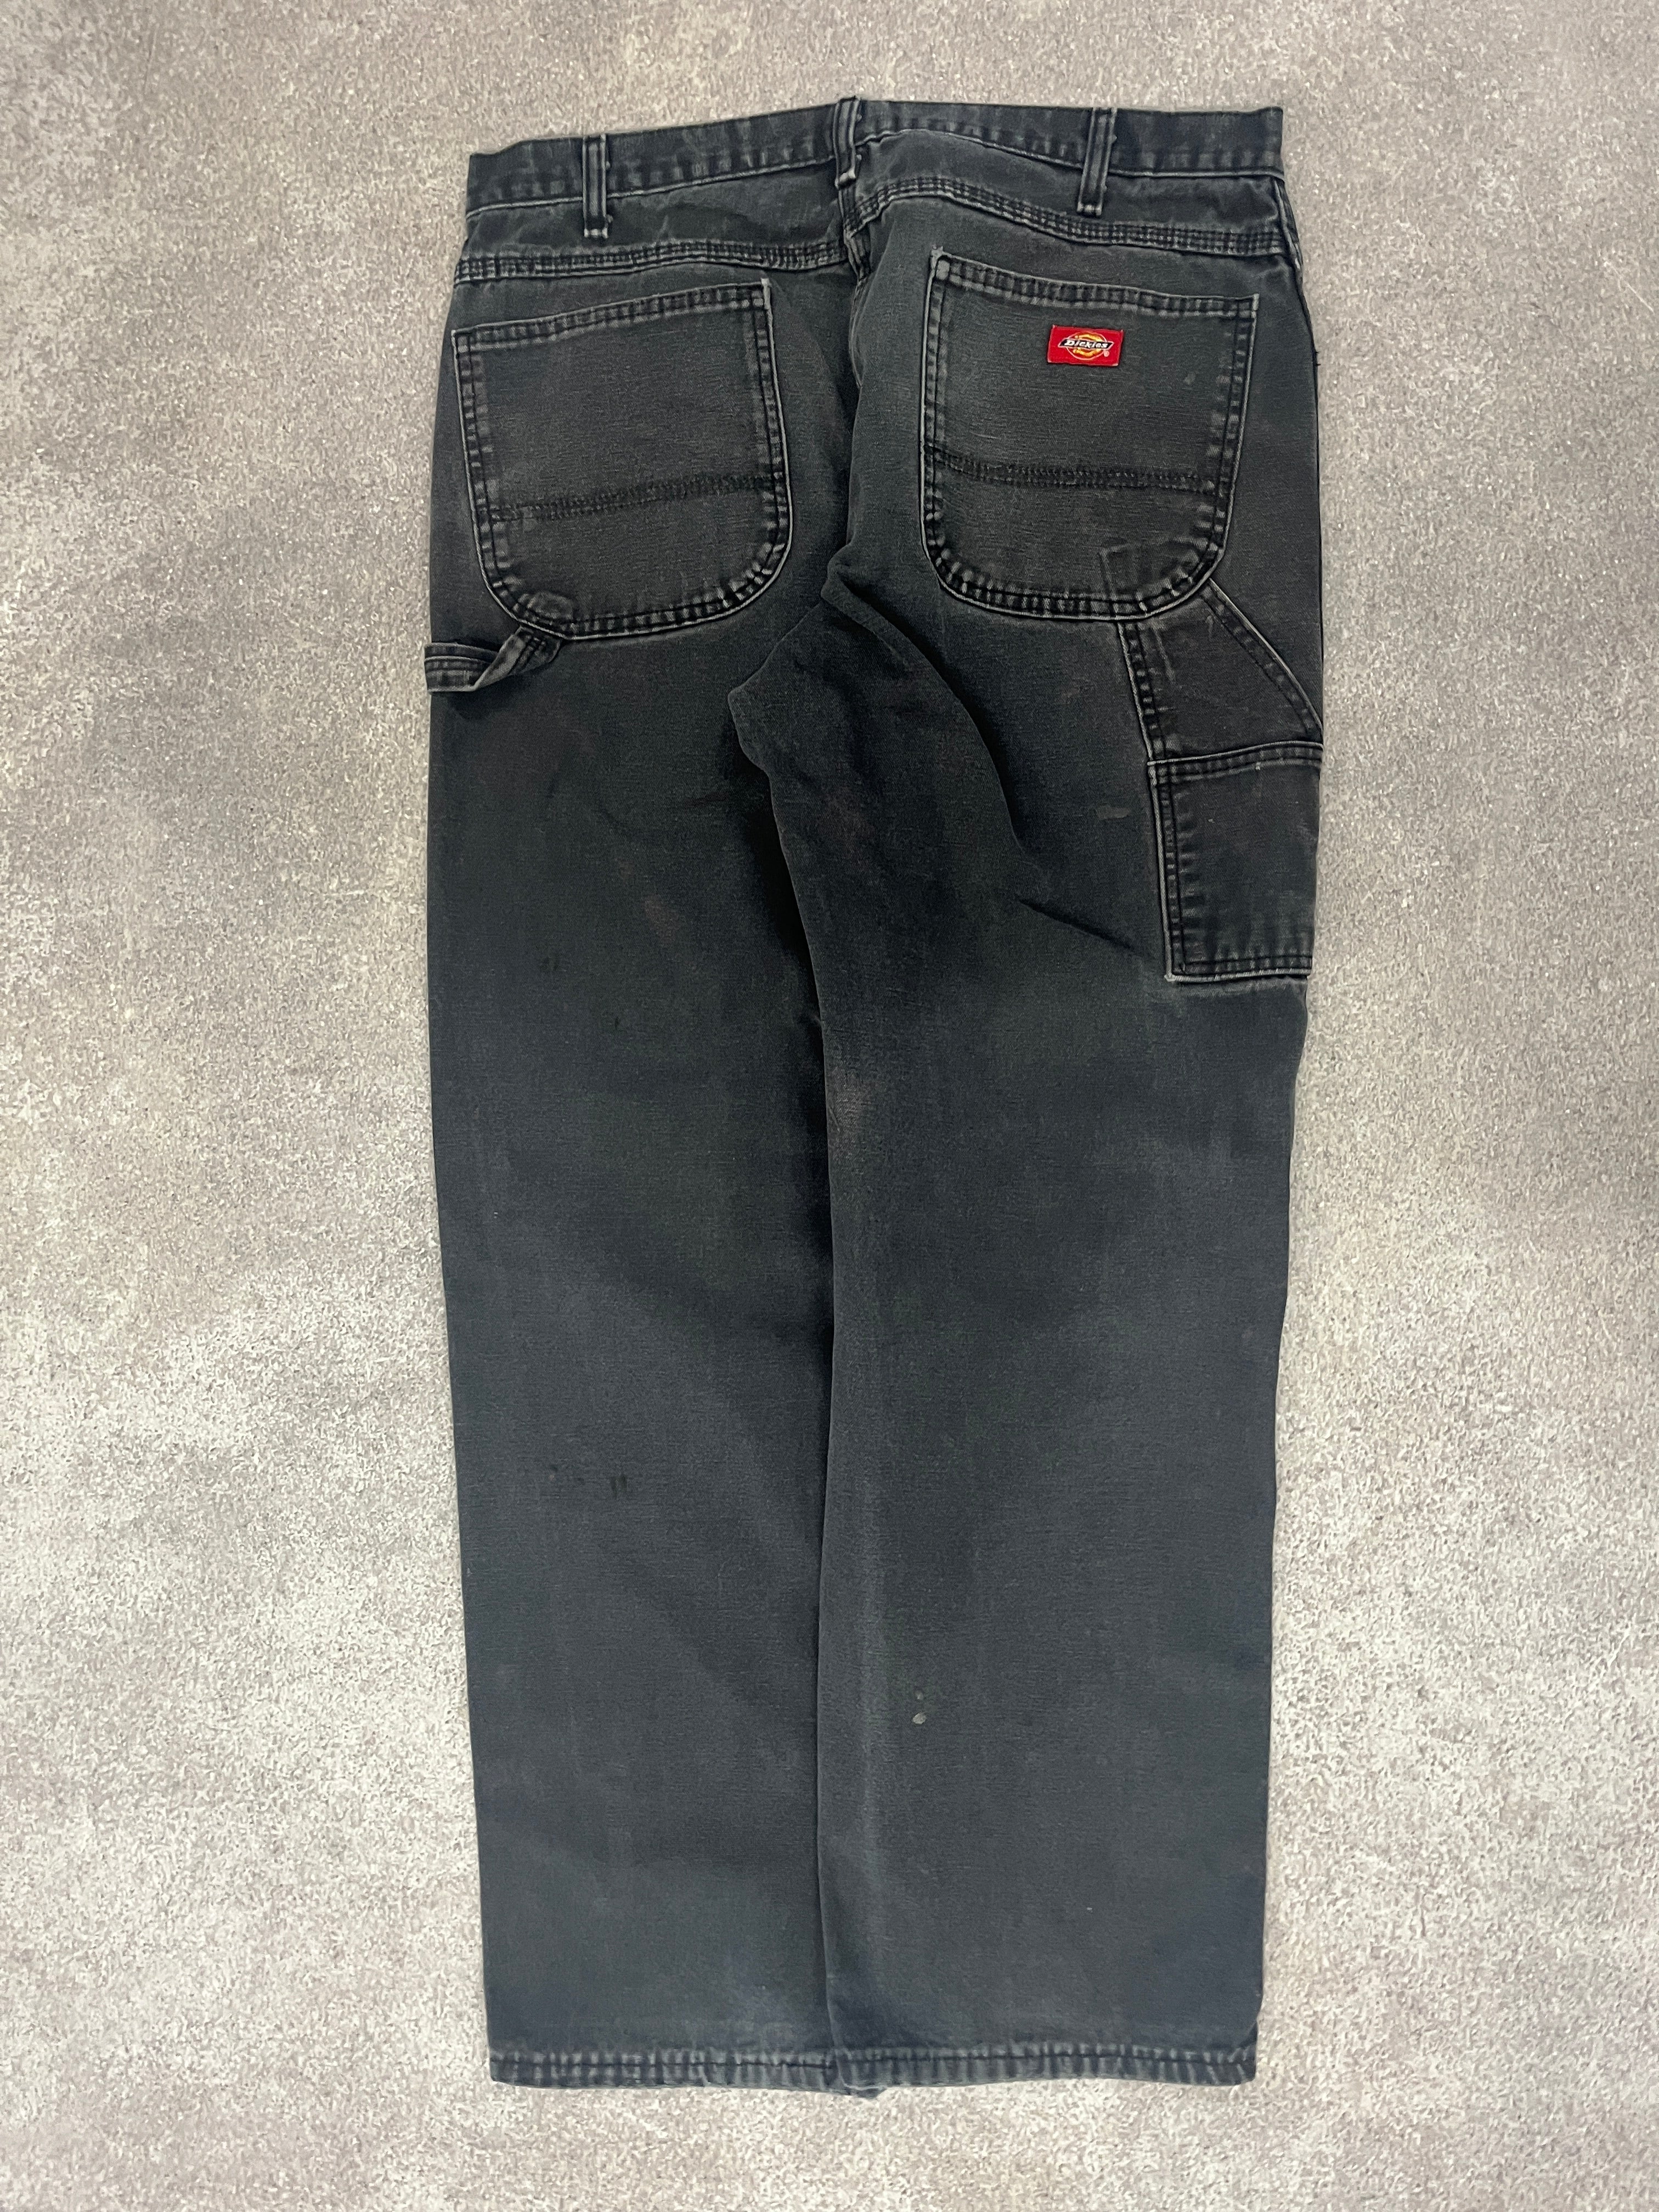 Vintage Dickies Carpenter Pants Black // W34 L32 - RHAGHOUSE VINTAGE